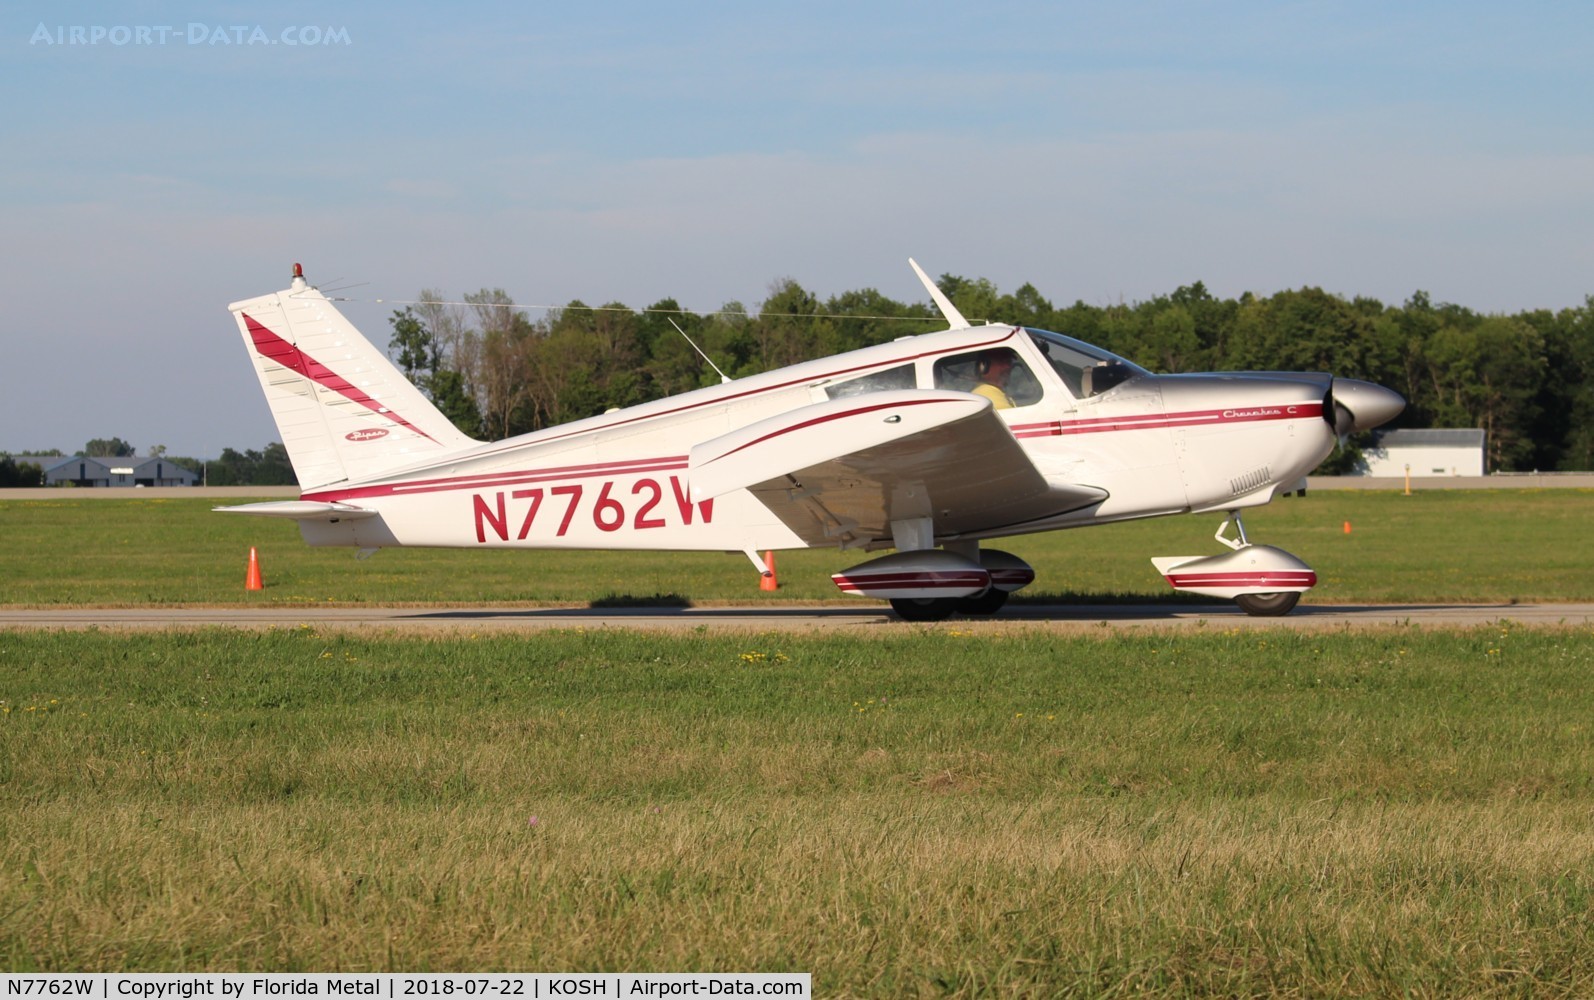 N7762W, 1964 Piper PA-28-180 C/N 28-1761, PA-28-180